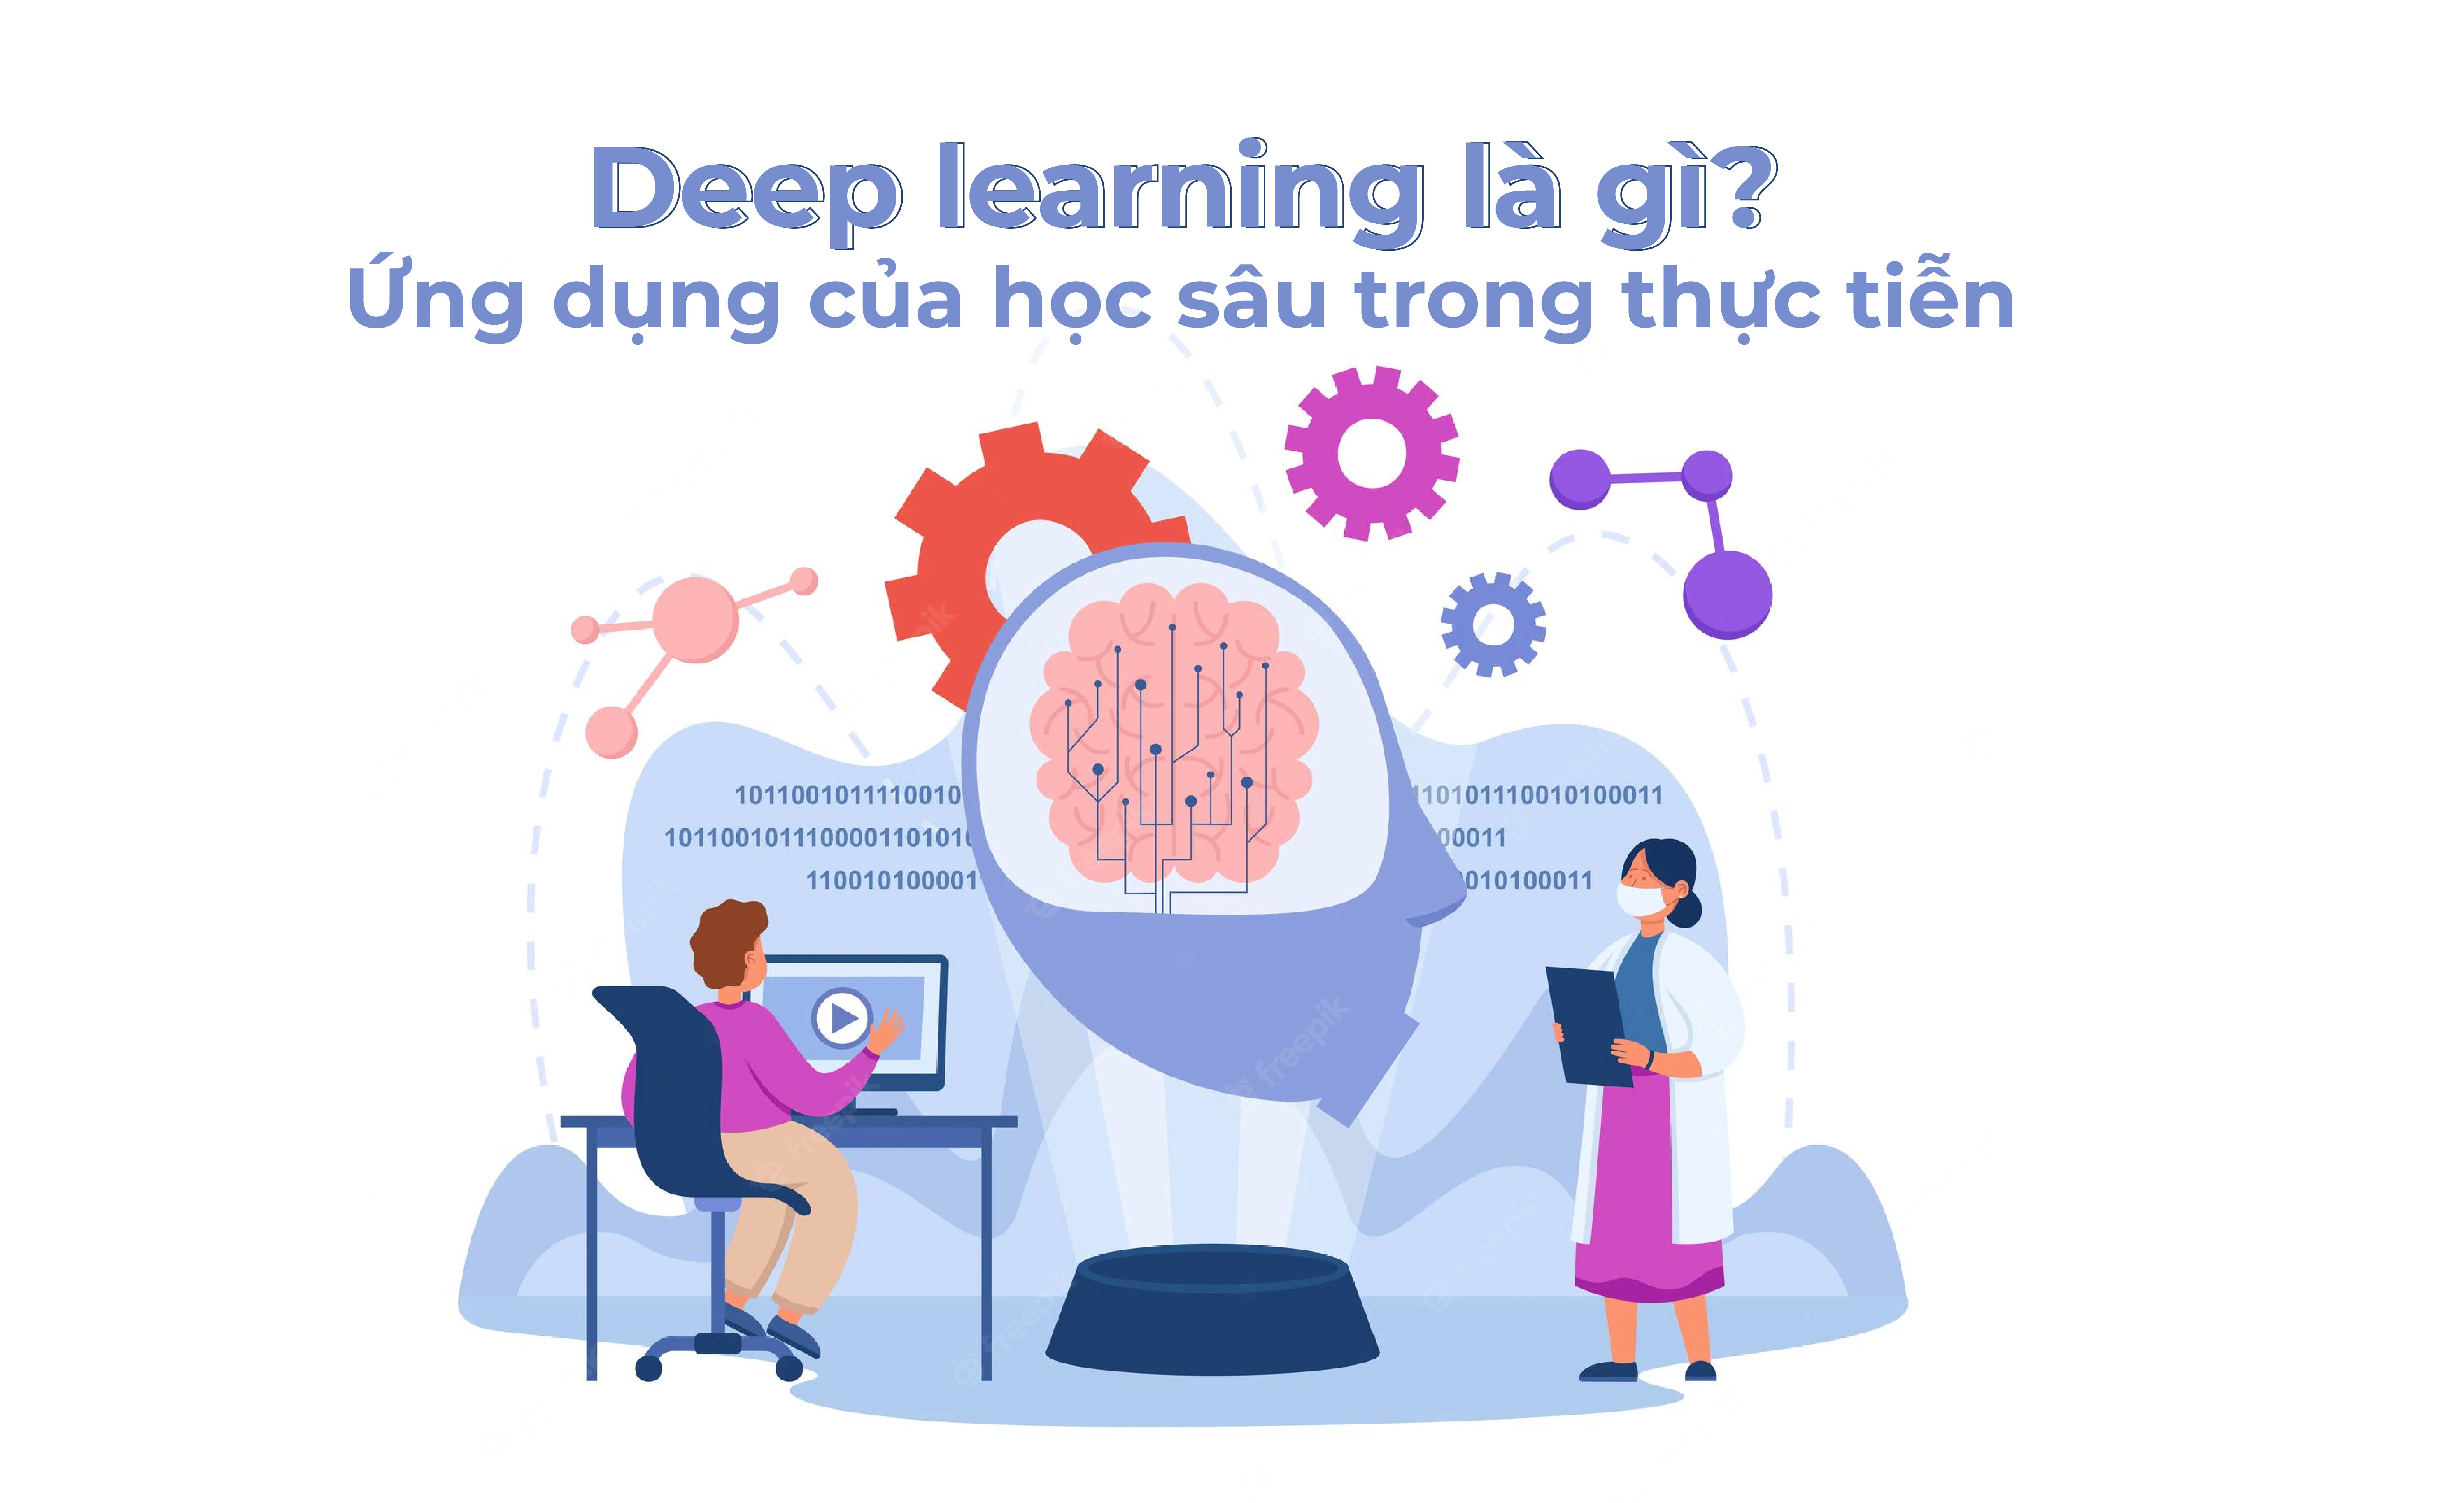 Deep learning là gì? Ứng dụng của học sâu trong thực tiễn